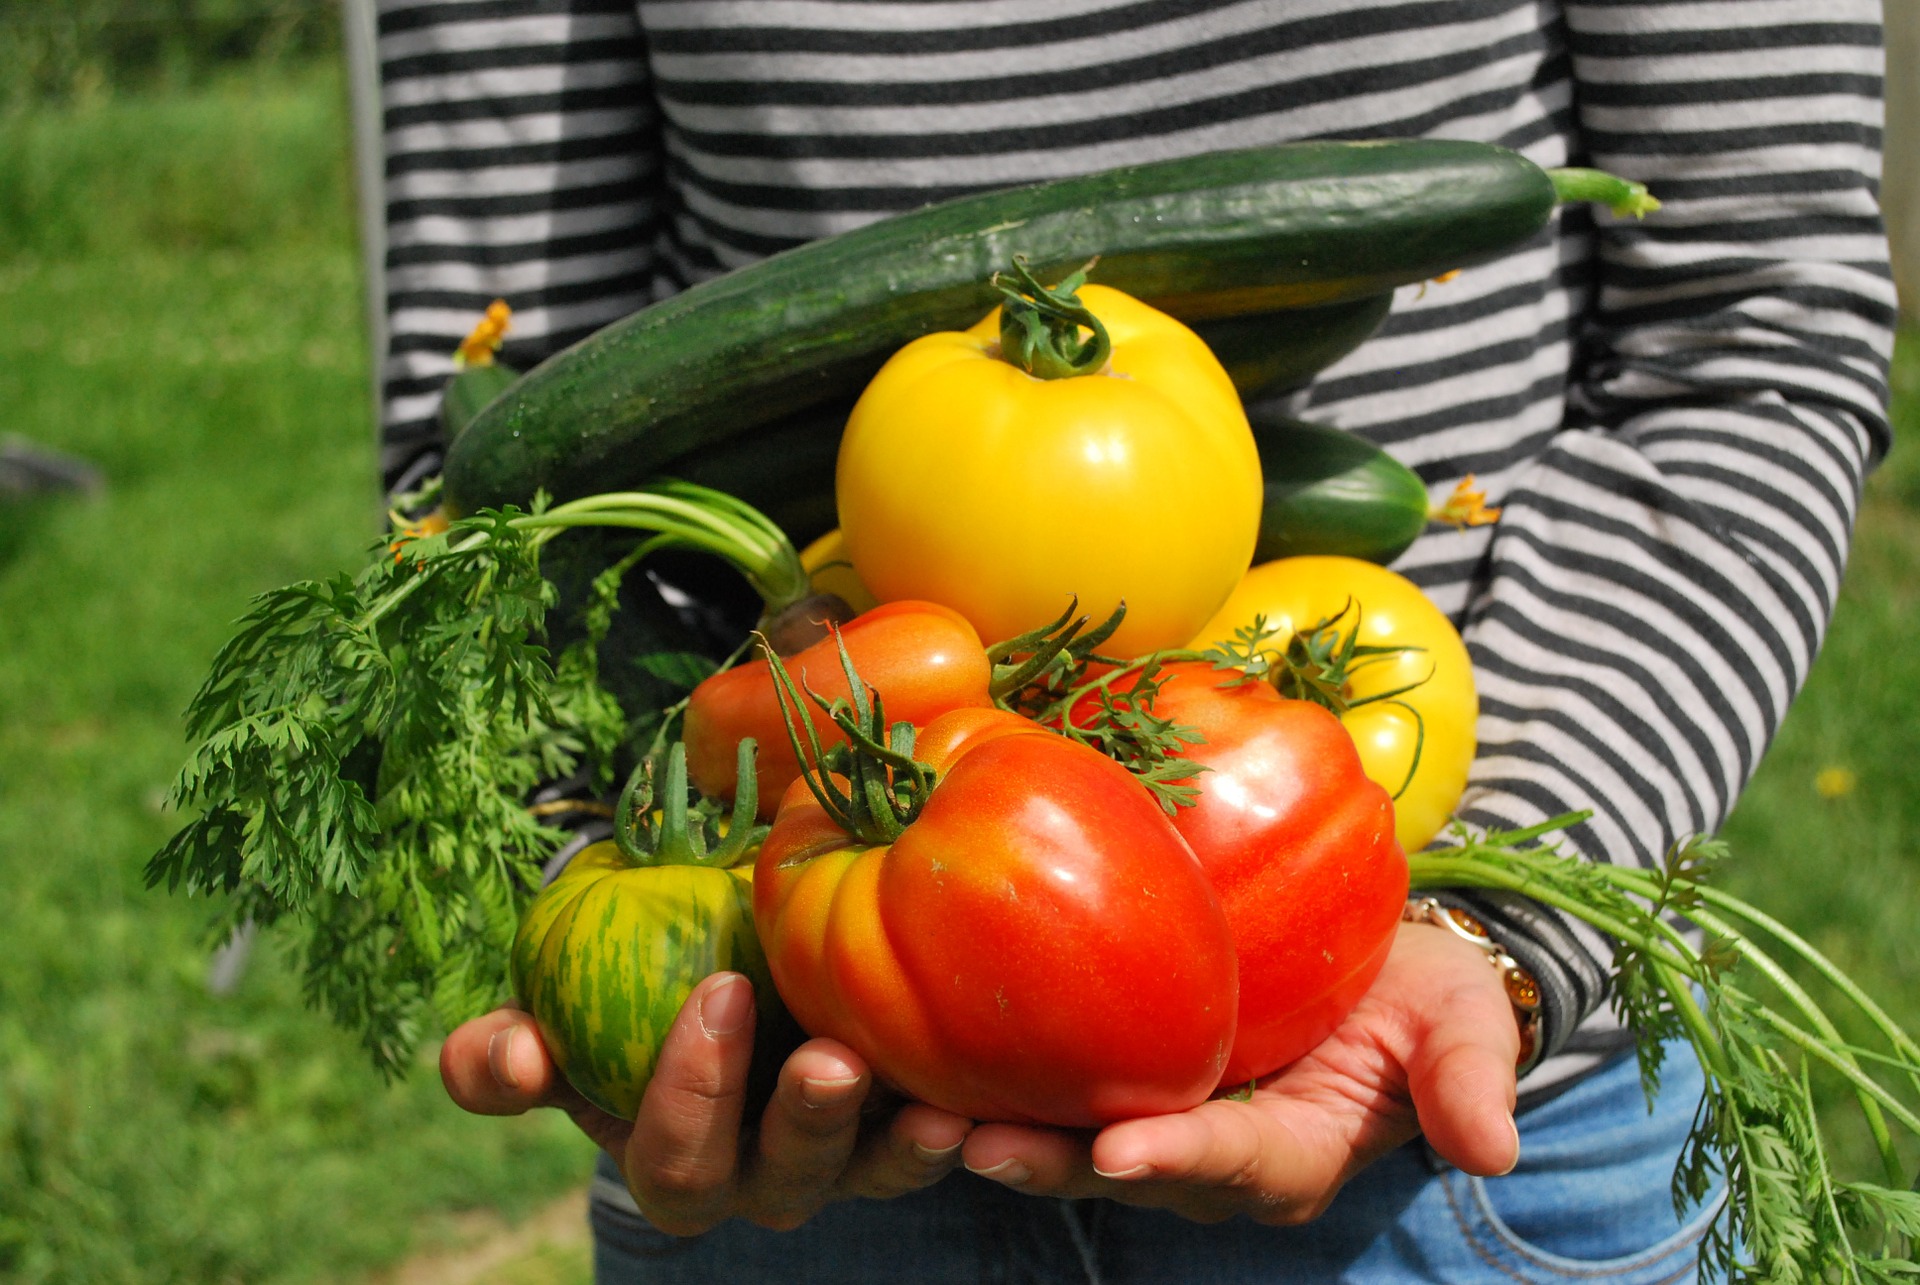 Zöldségeinket kezünkben tartva. Teendőink augusztusi kiskertünkben: friss zöldségek az eredmény!